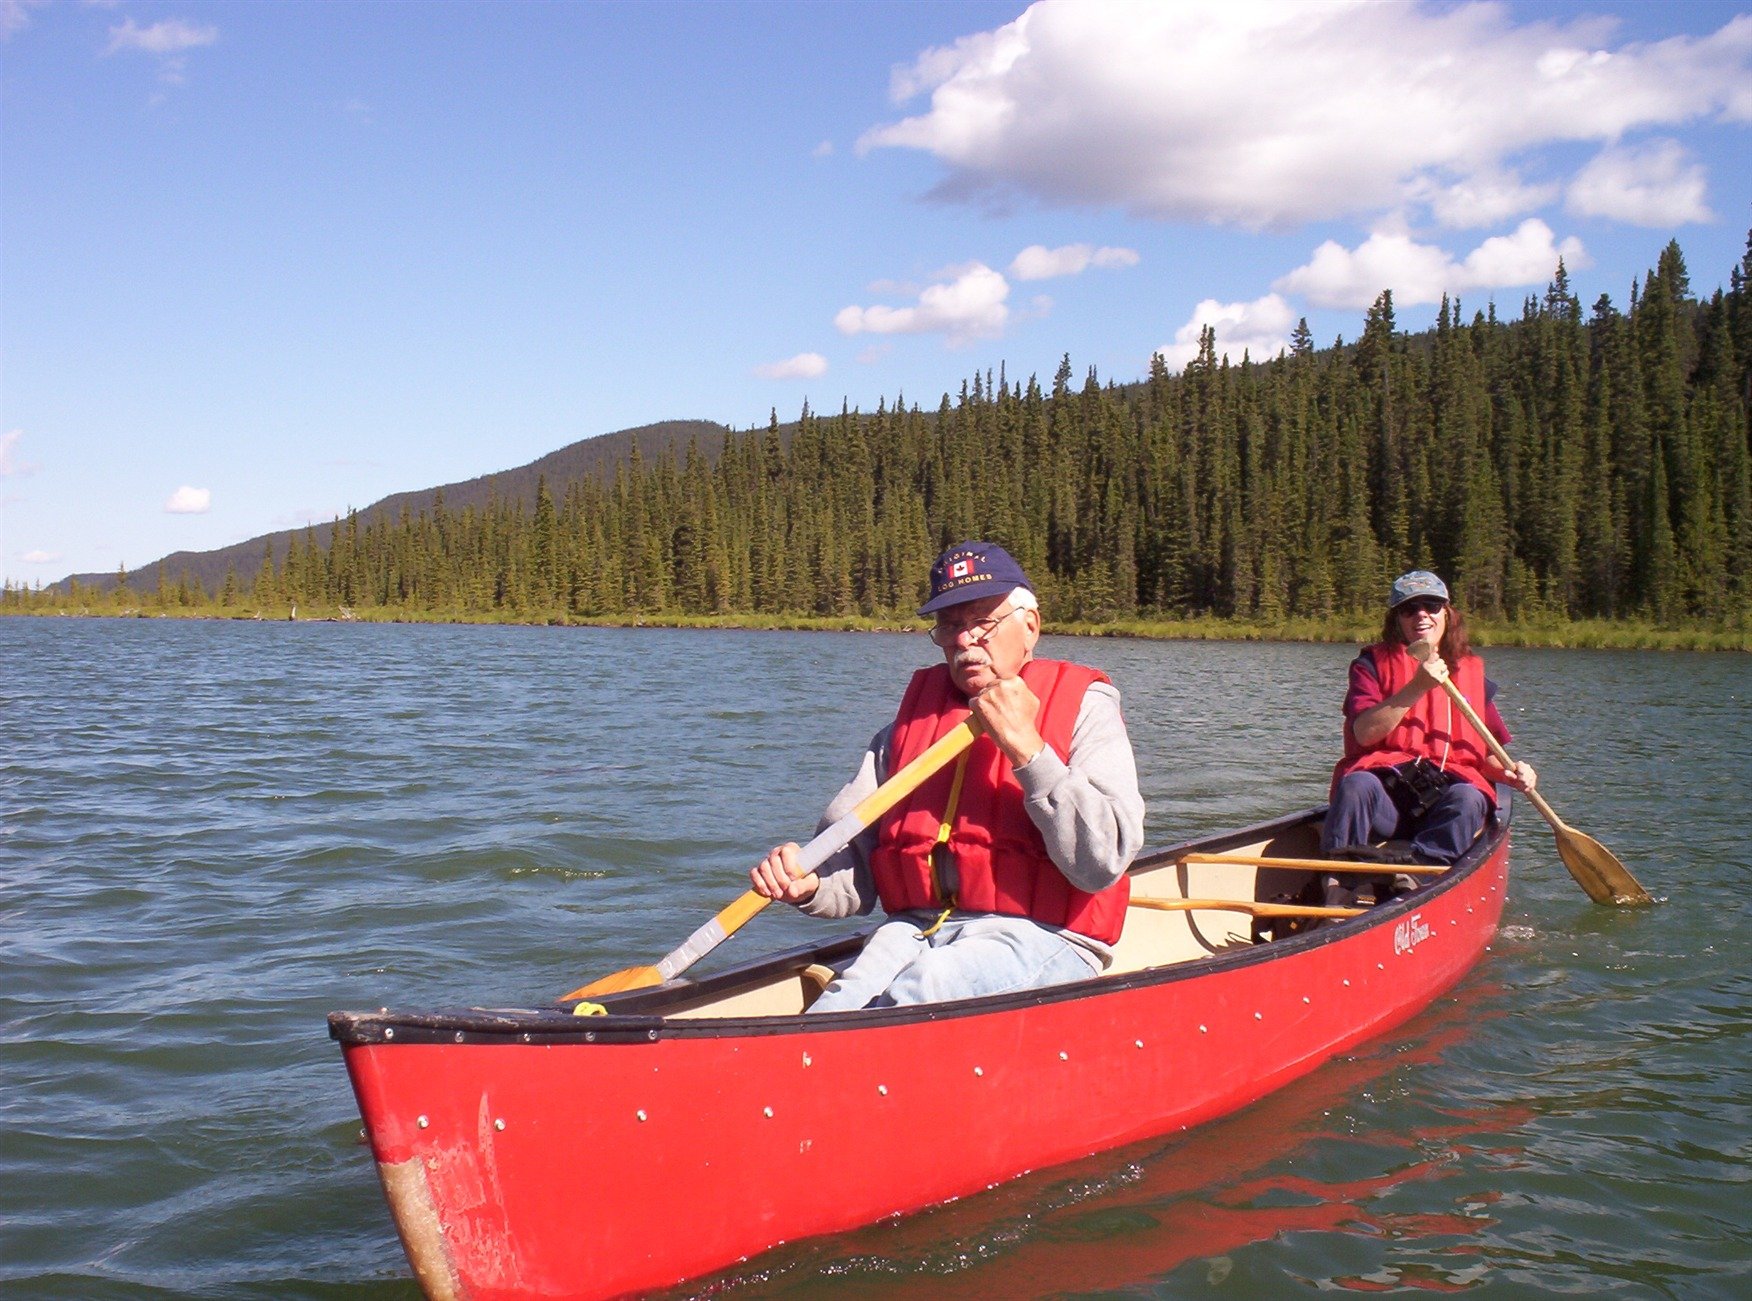 netson lake canoeing karl and marianne.jpg